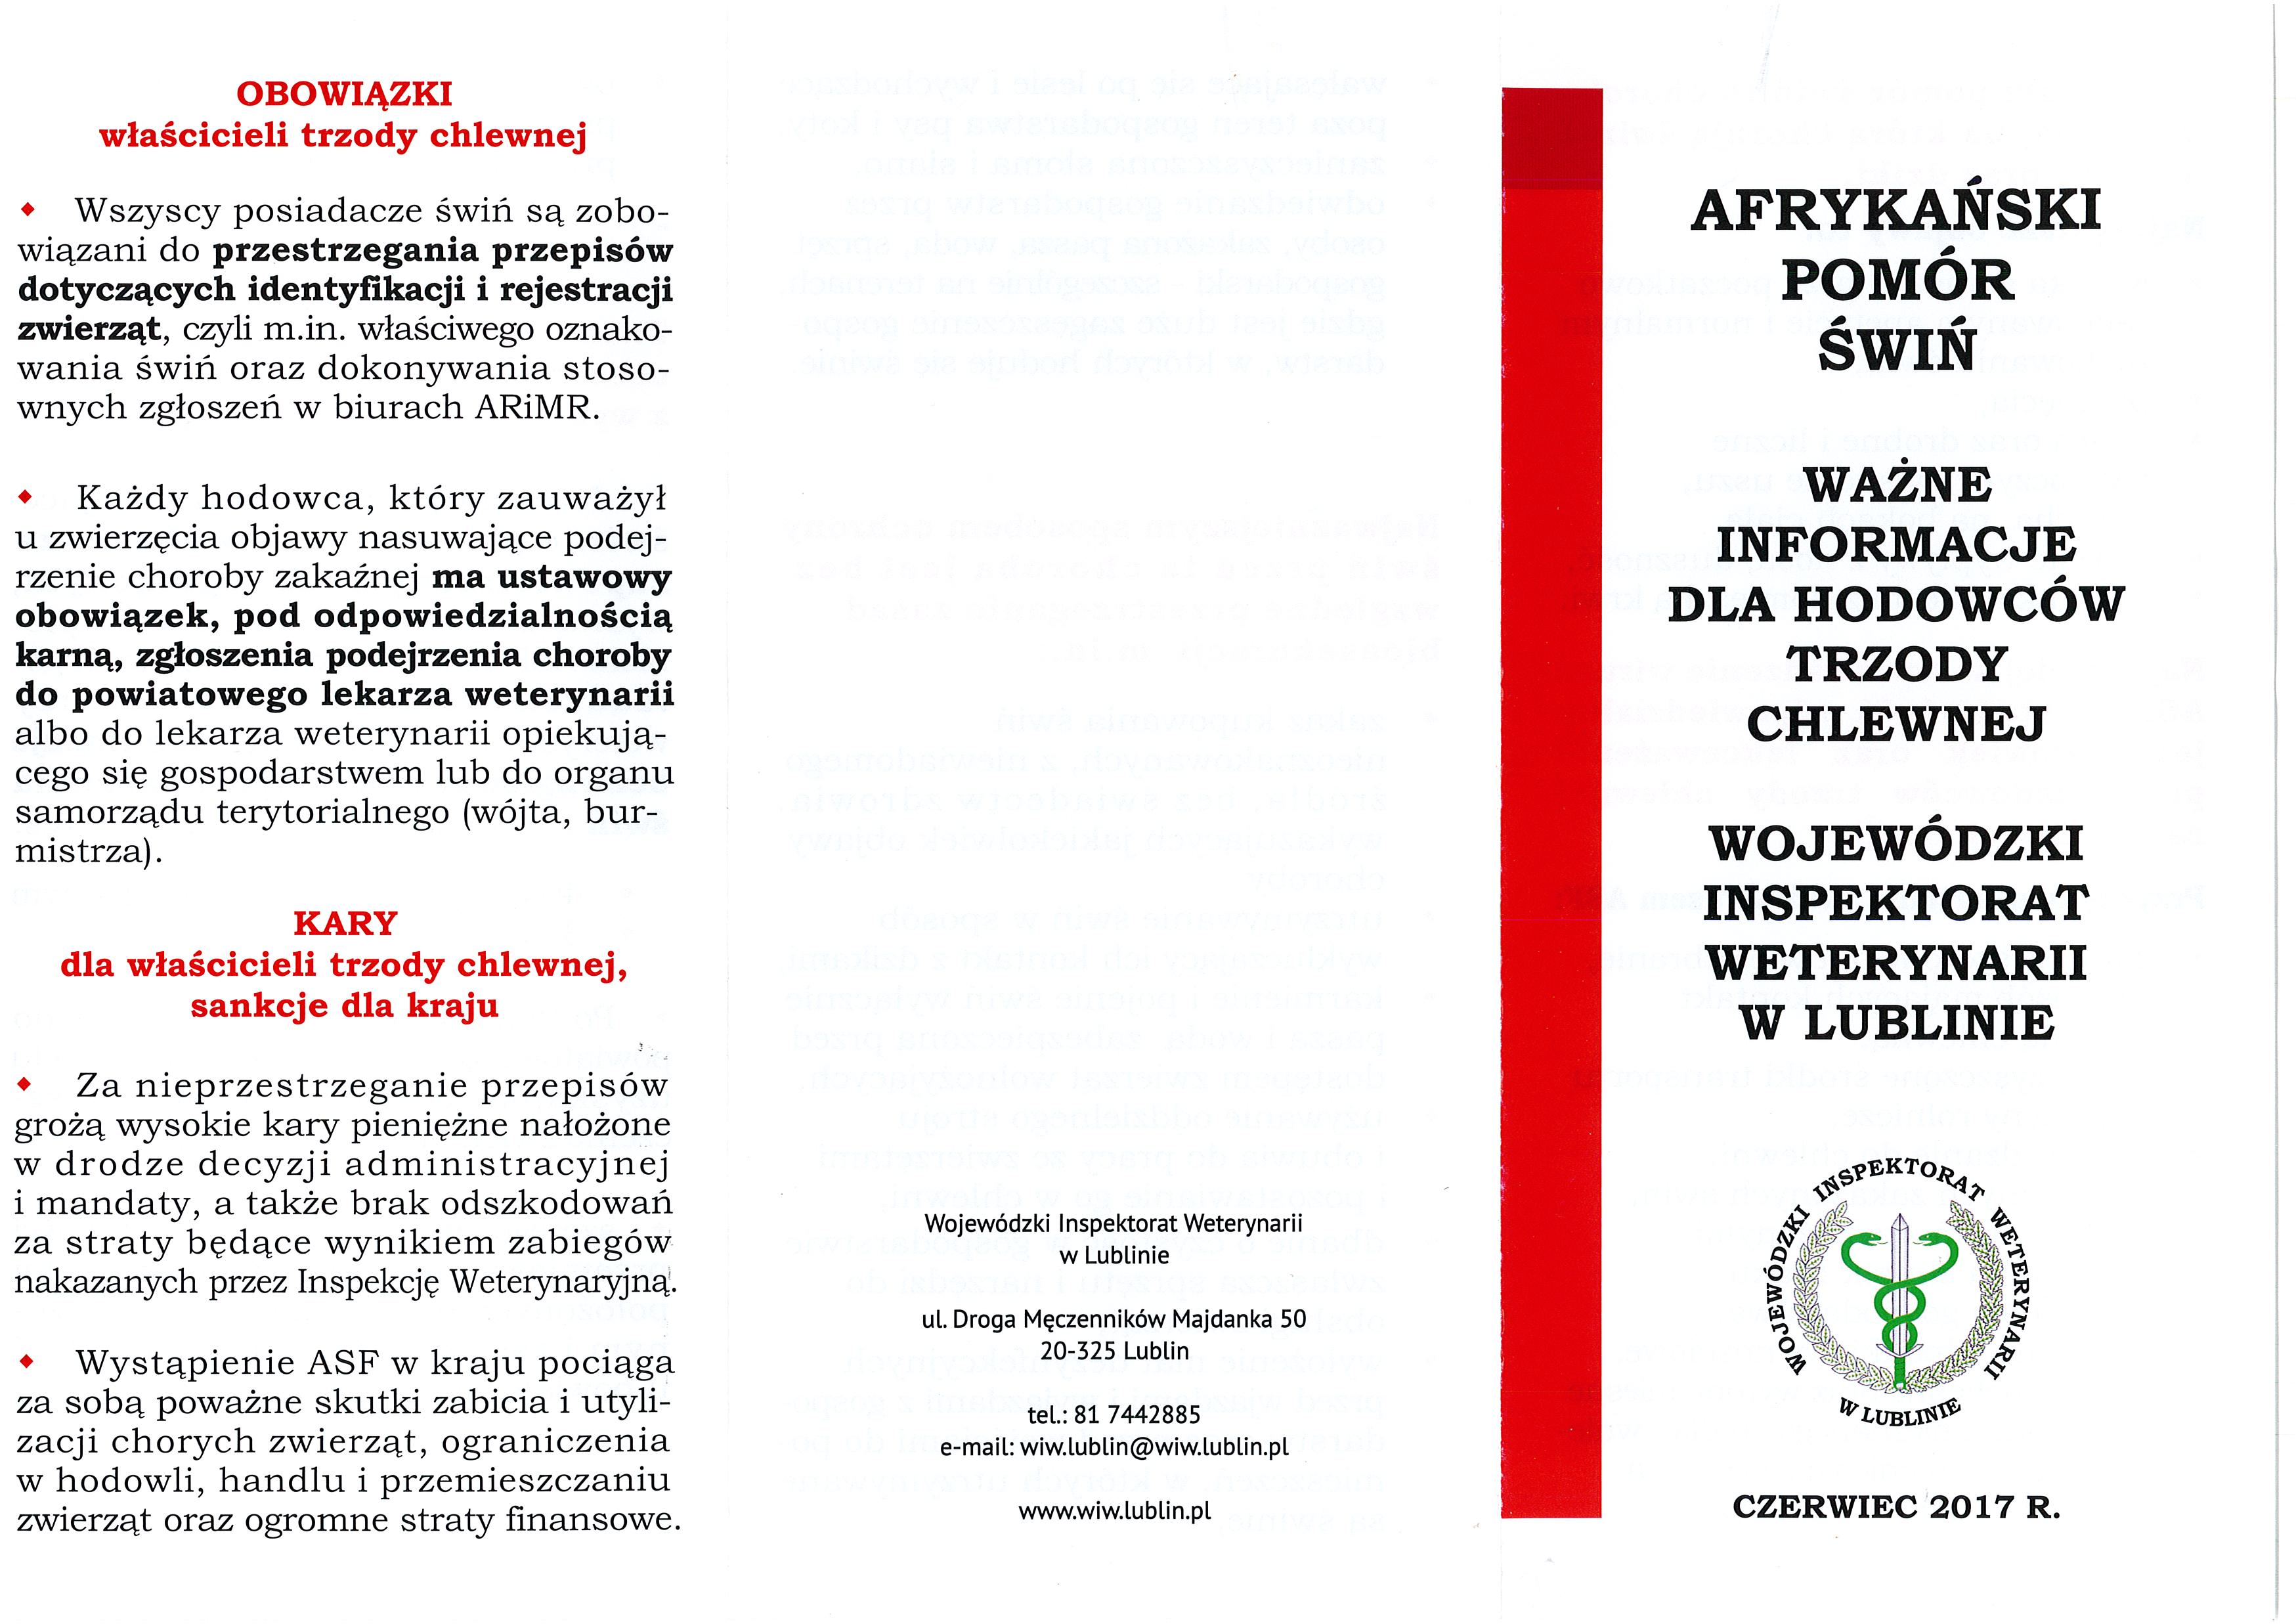 Ulotka informacyjna Lubelskiego Wojewódzkiego Lekarza Weterynarii zawierająca ważne informacje dla hodowców trzody chlewnej